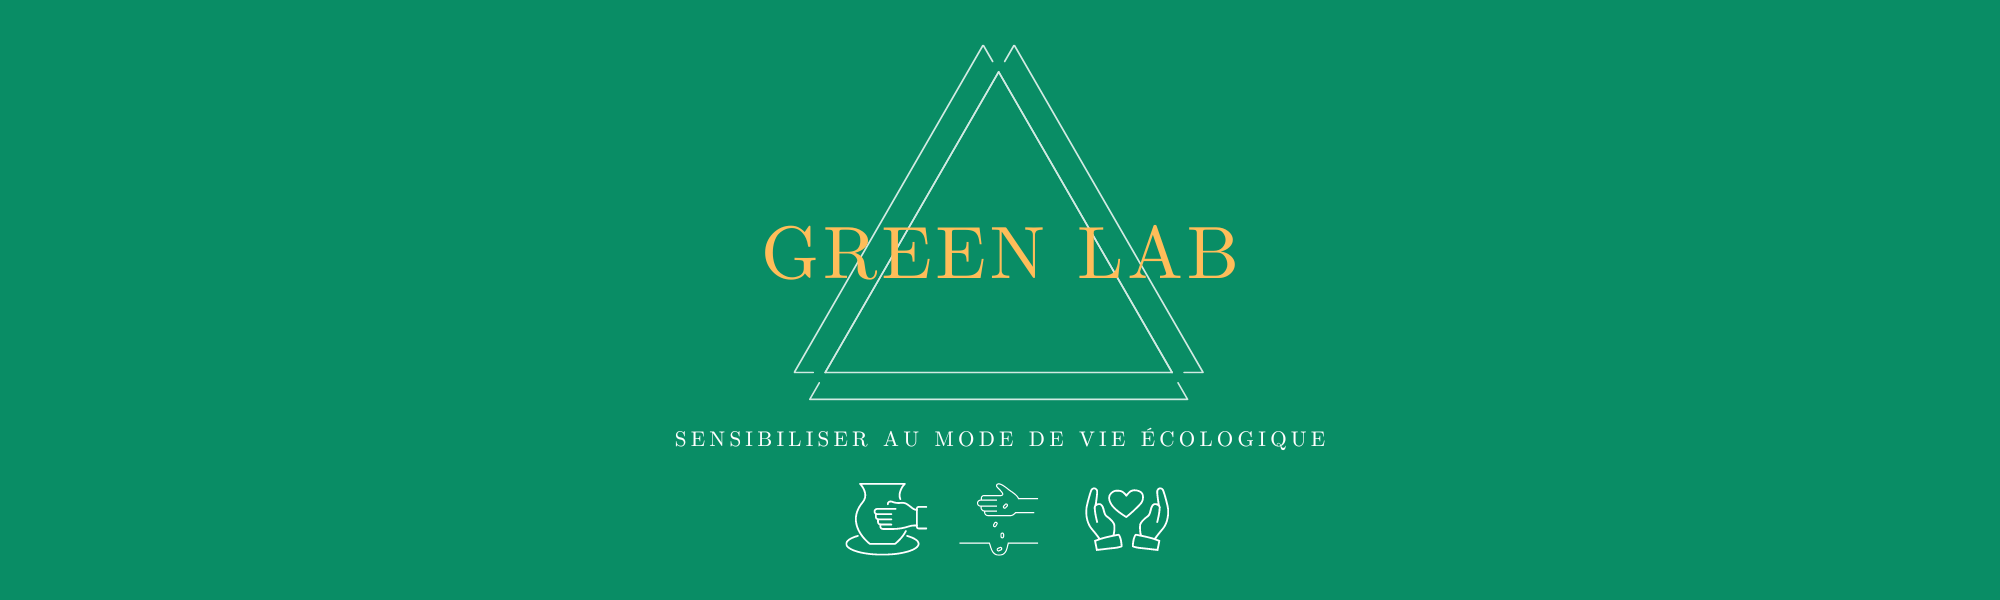 devenez-adhérent-du-green-lab-ecolieu-de-et-local-immersion-ecologique-en-ecolieu